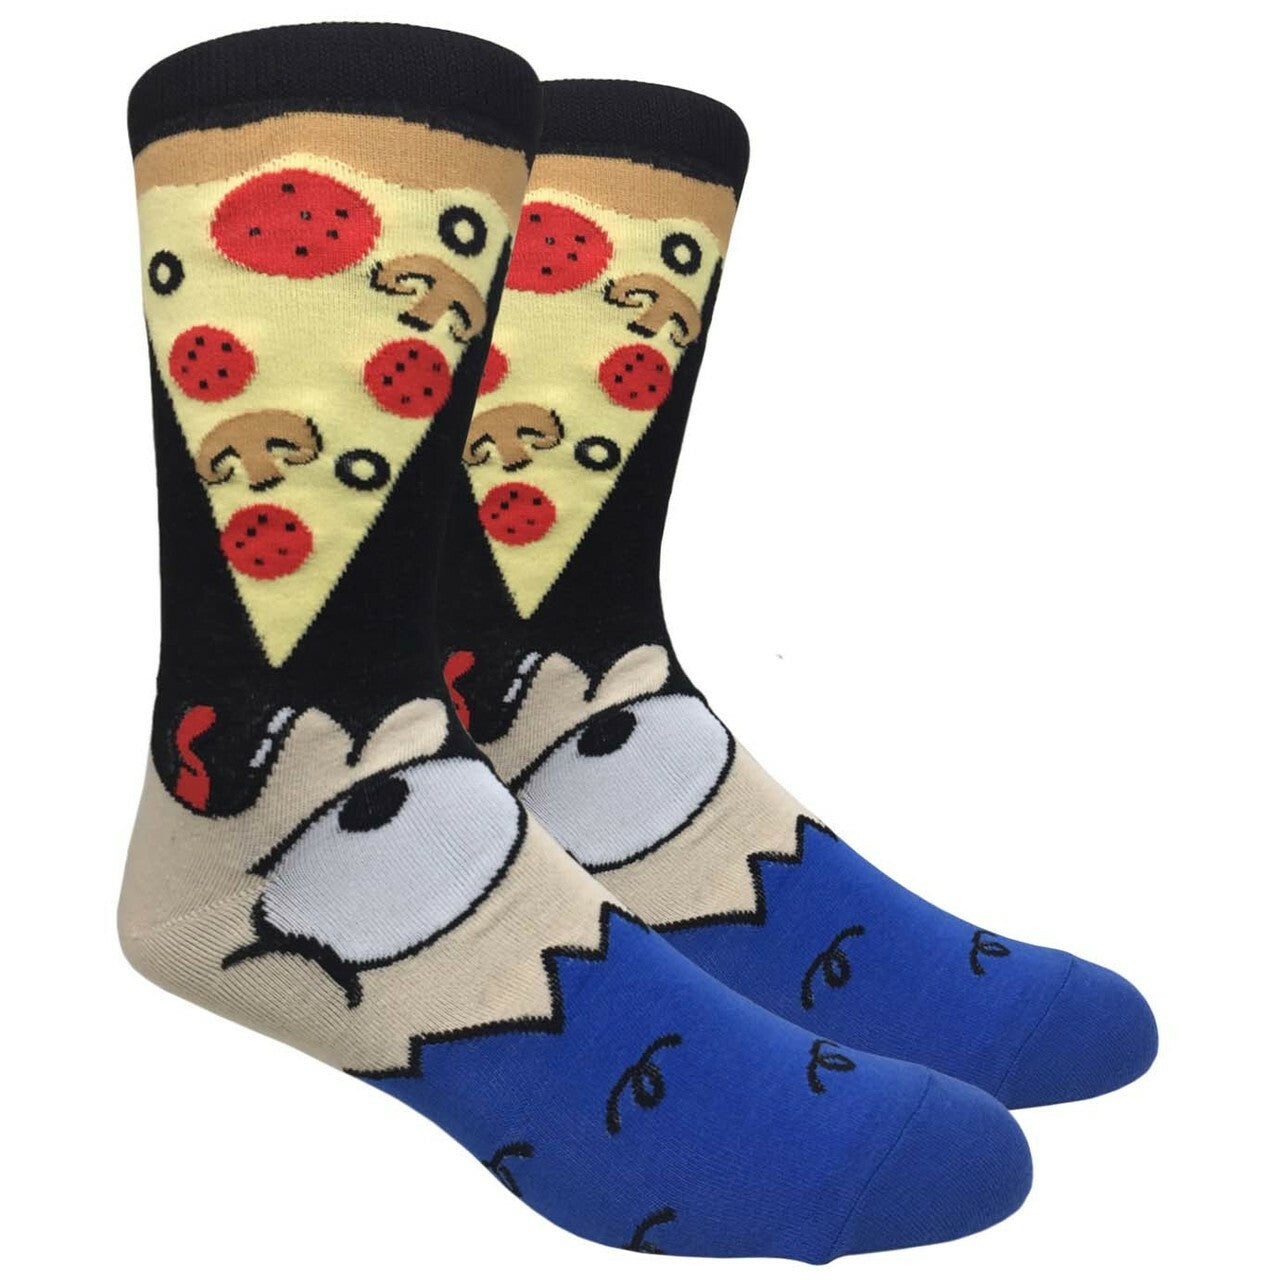 Let's Eat Pizza Socks (Adult Large)